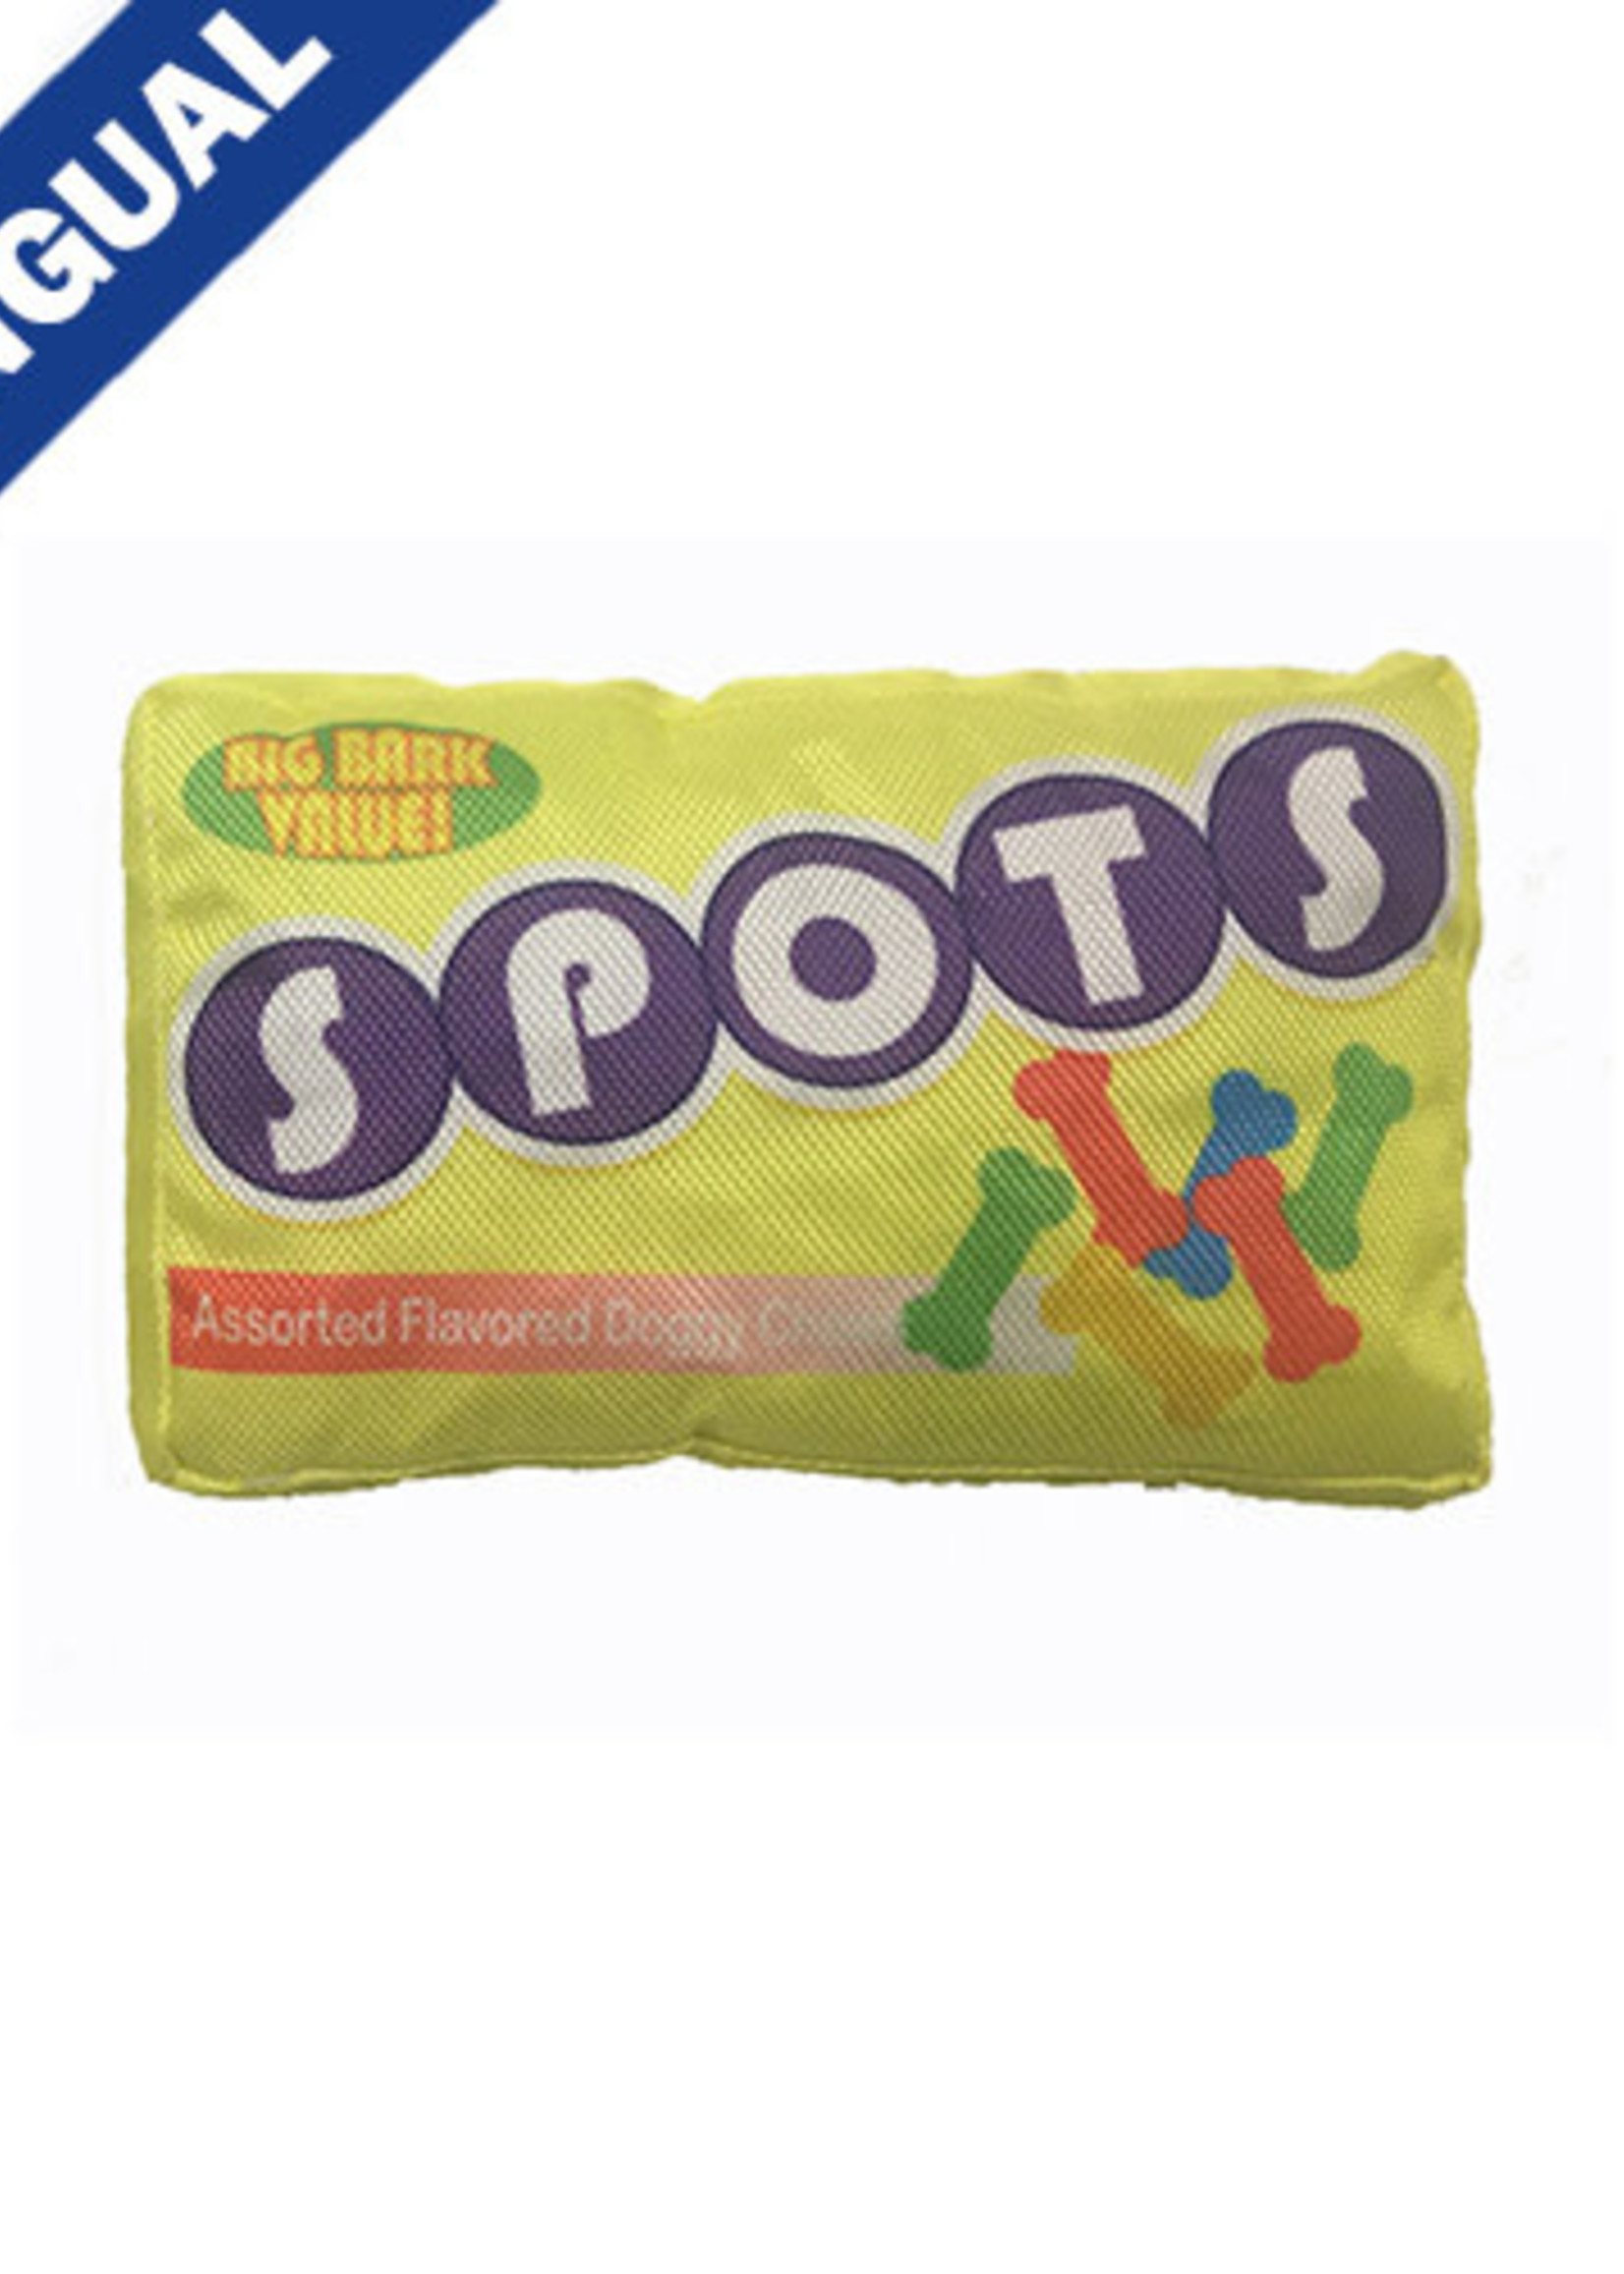 Spot® Spots 7" Dog Toy